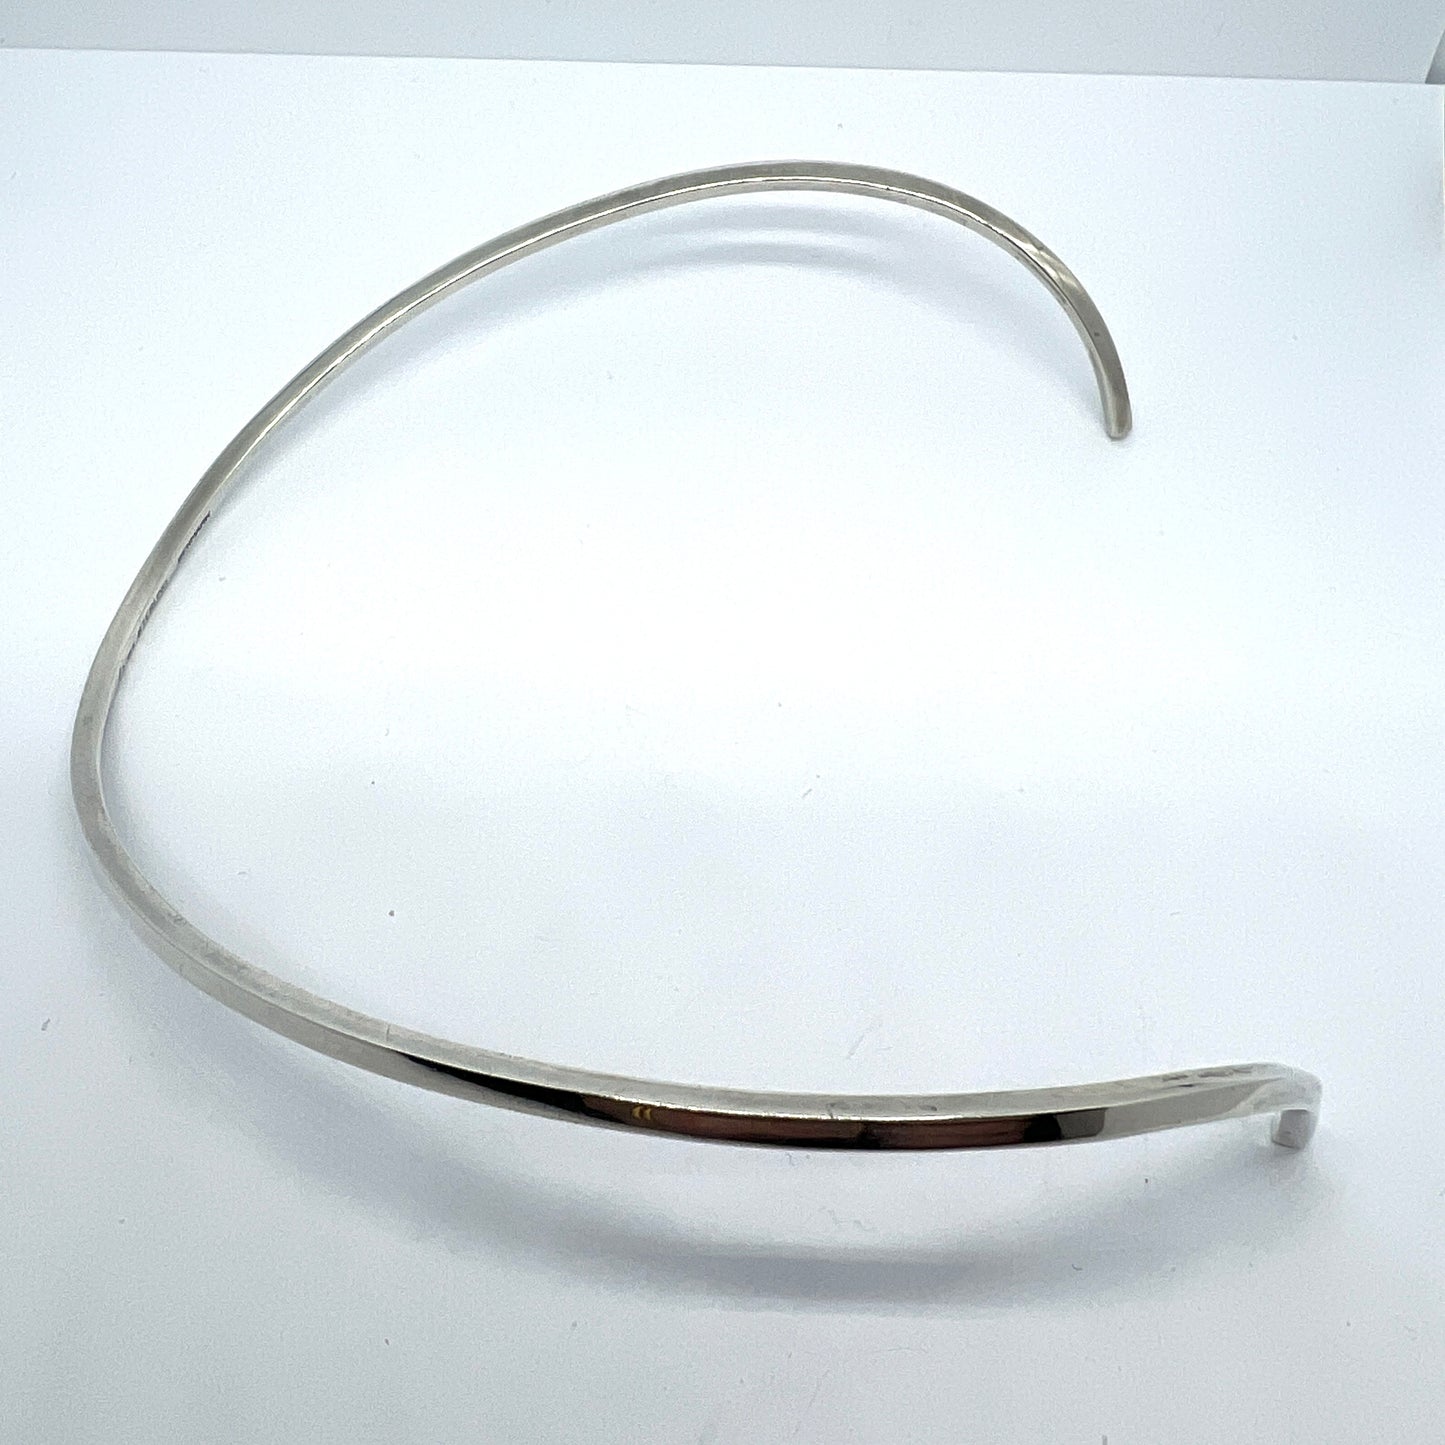 Palle Bisgaard, Denmark 1960s Sterling Silver Torque Necklace. Design no 6